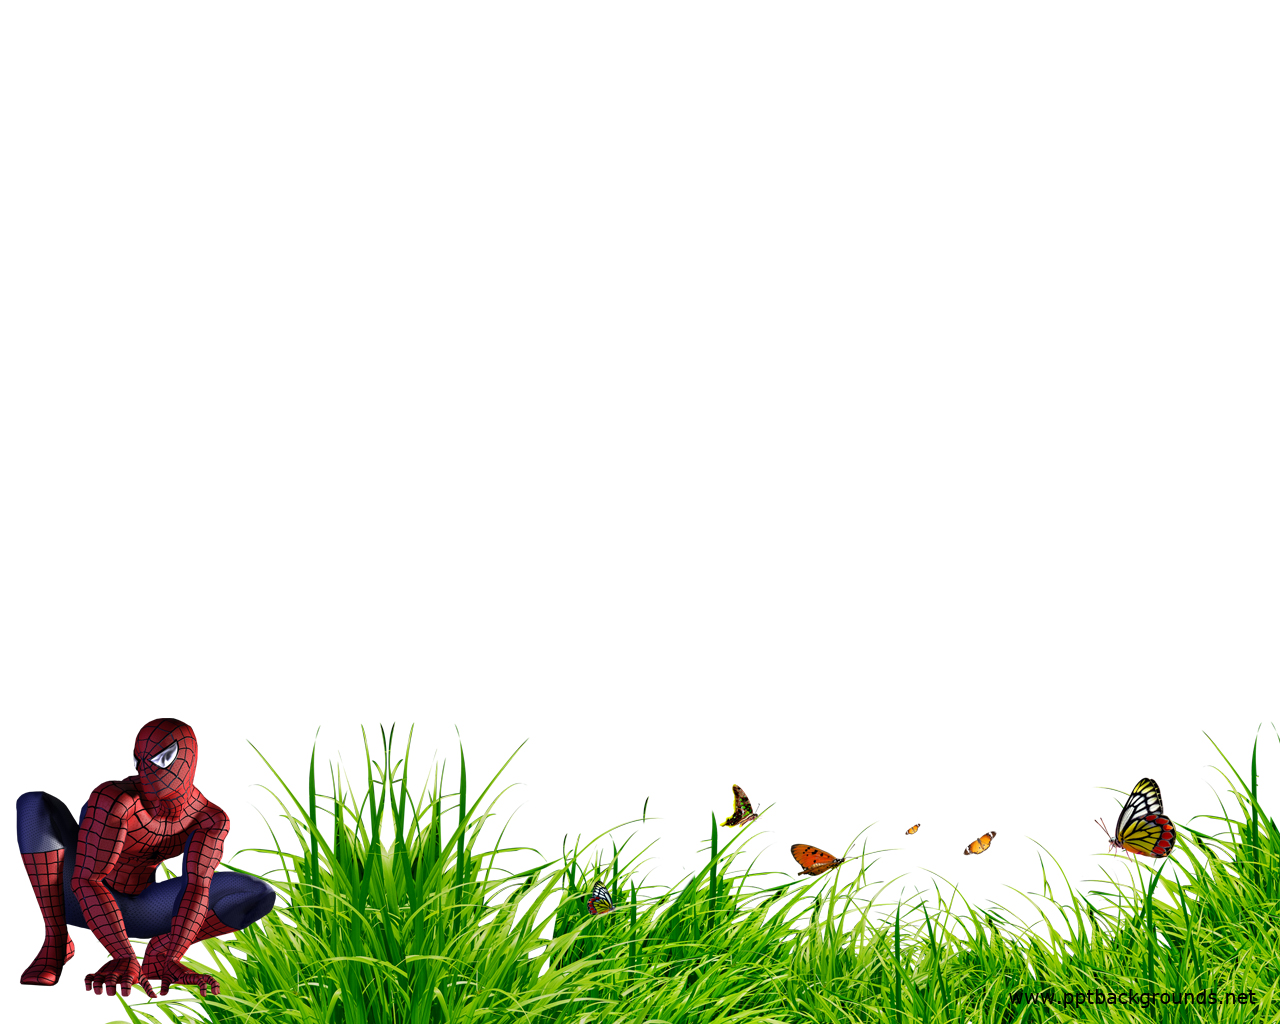 Spiderman powerpoint background